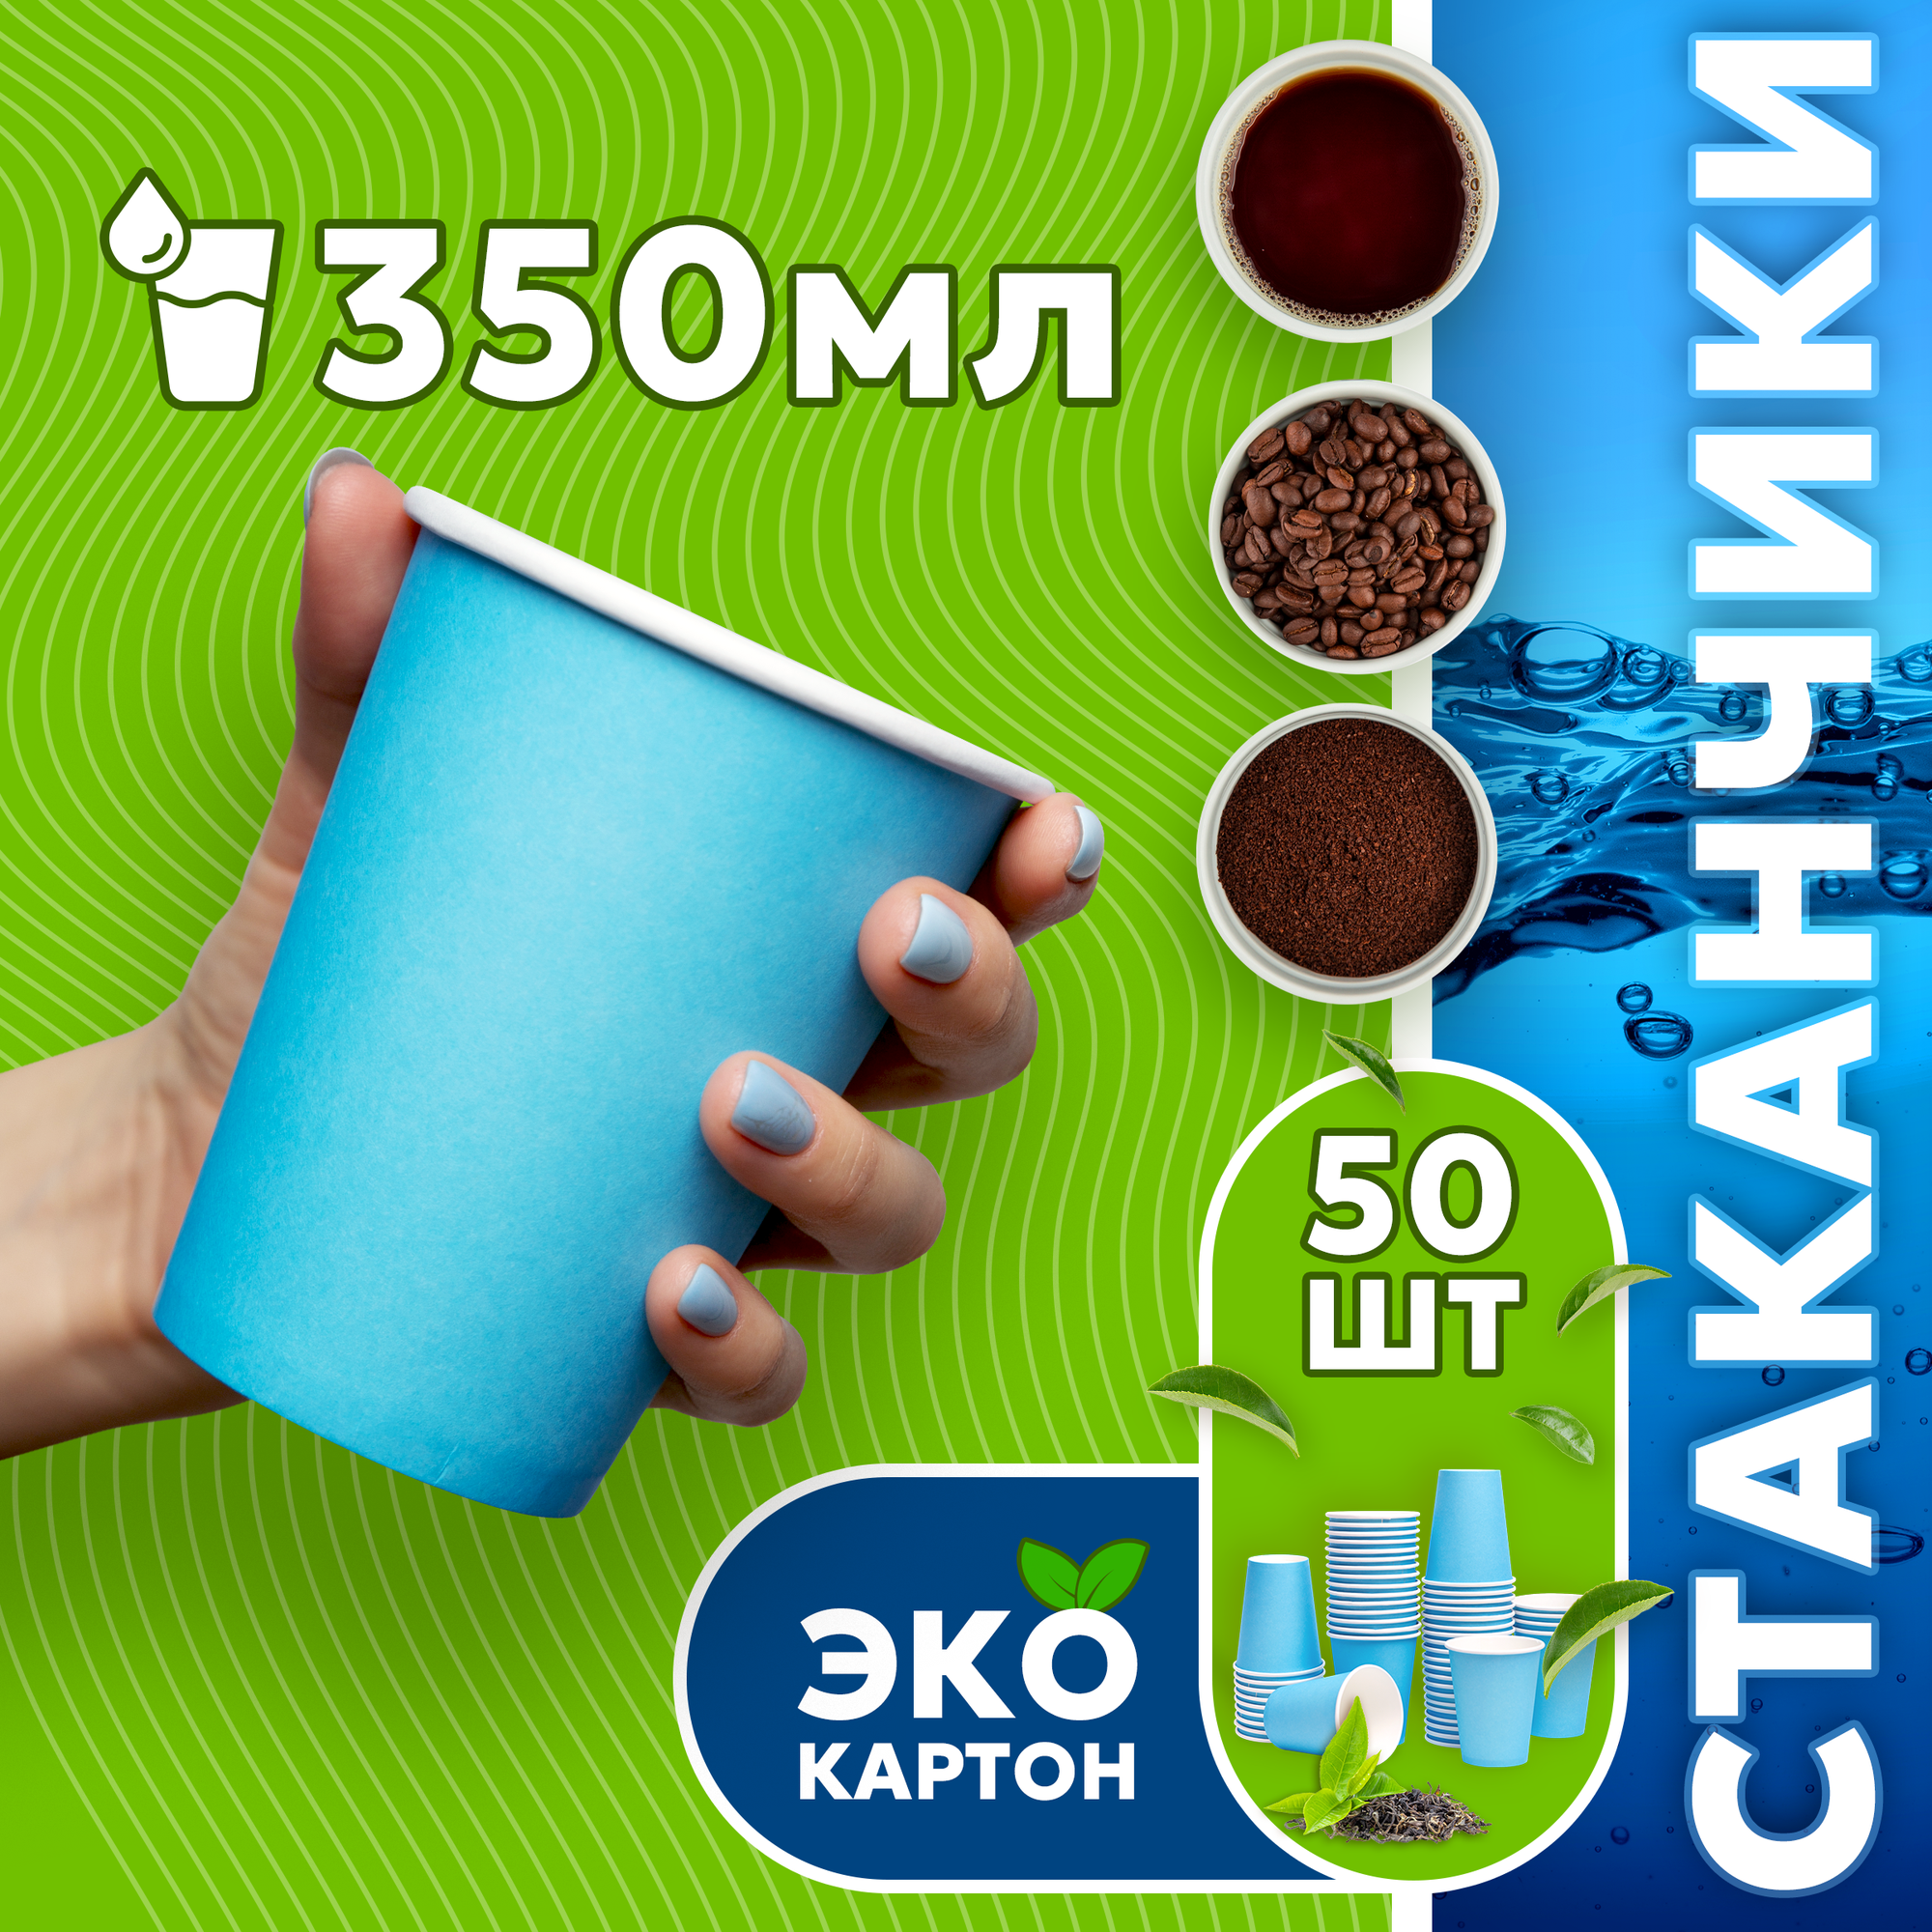 Набор одноразовых стаканов гриникс, объем 350 мл 50 шт. синие, бумажные, однослойные, для кофе, чая, холодных и горячих напитков